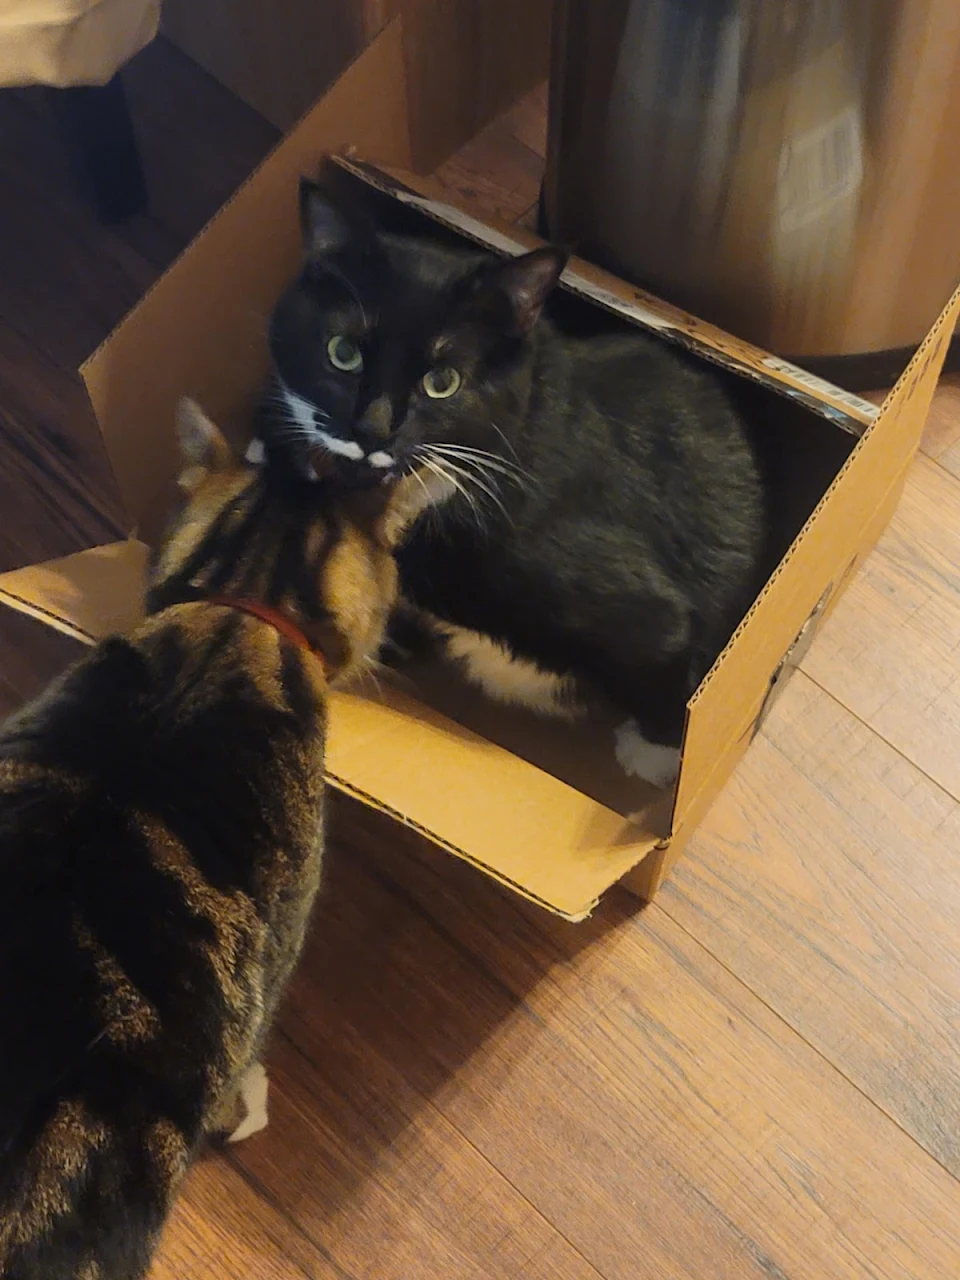 Just a cat in a box